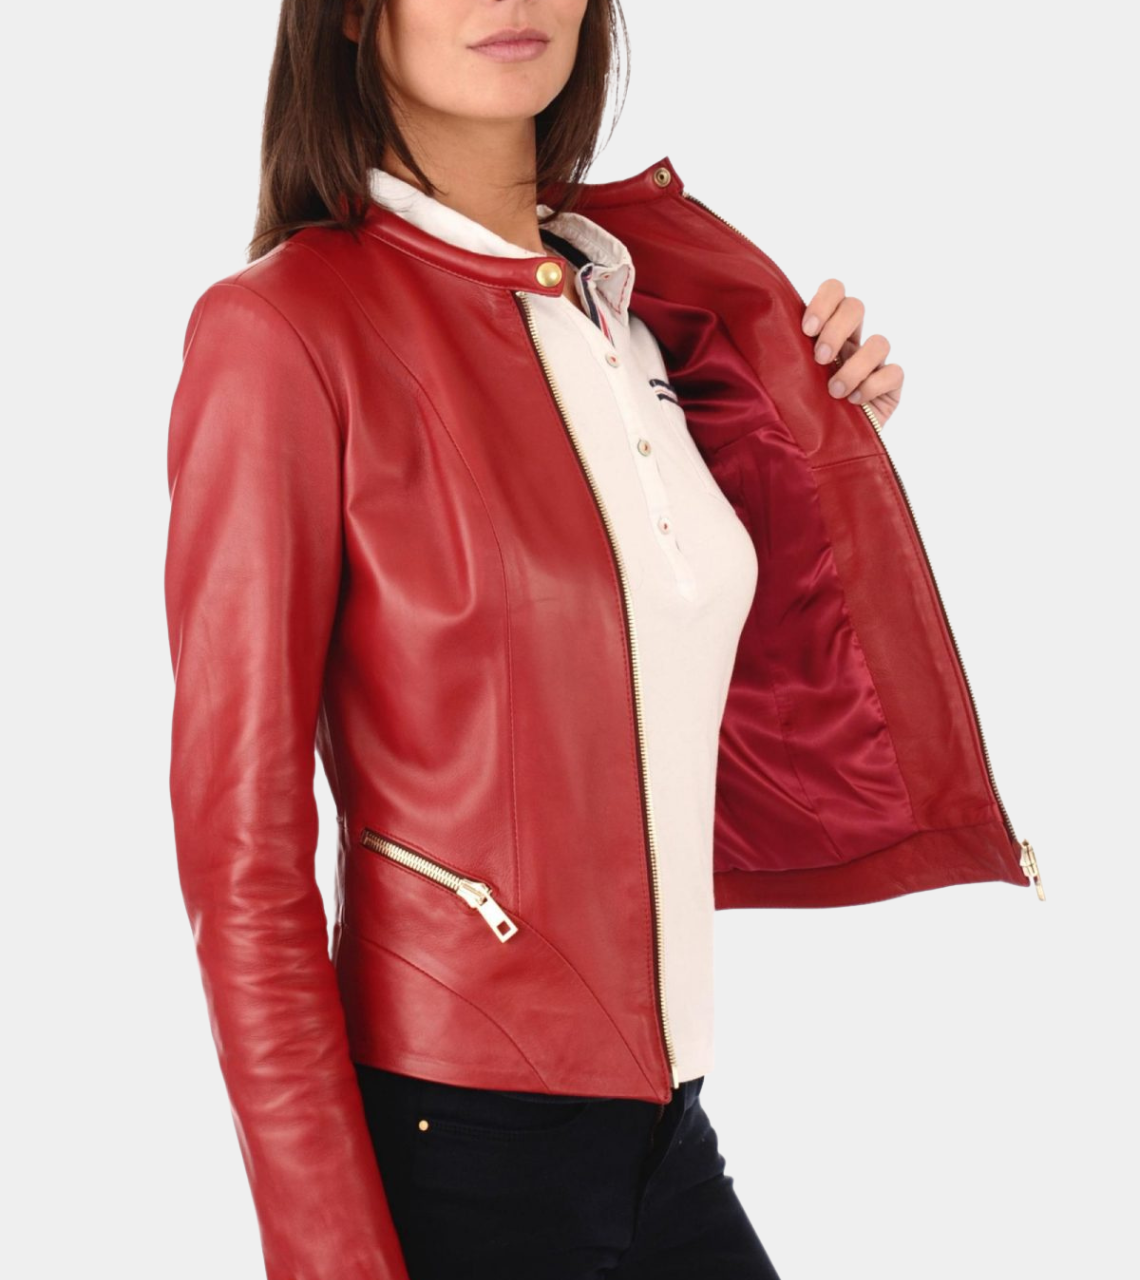  Red Women's Biker Leather Jacket